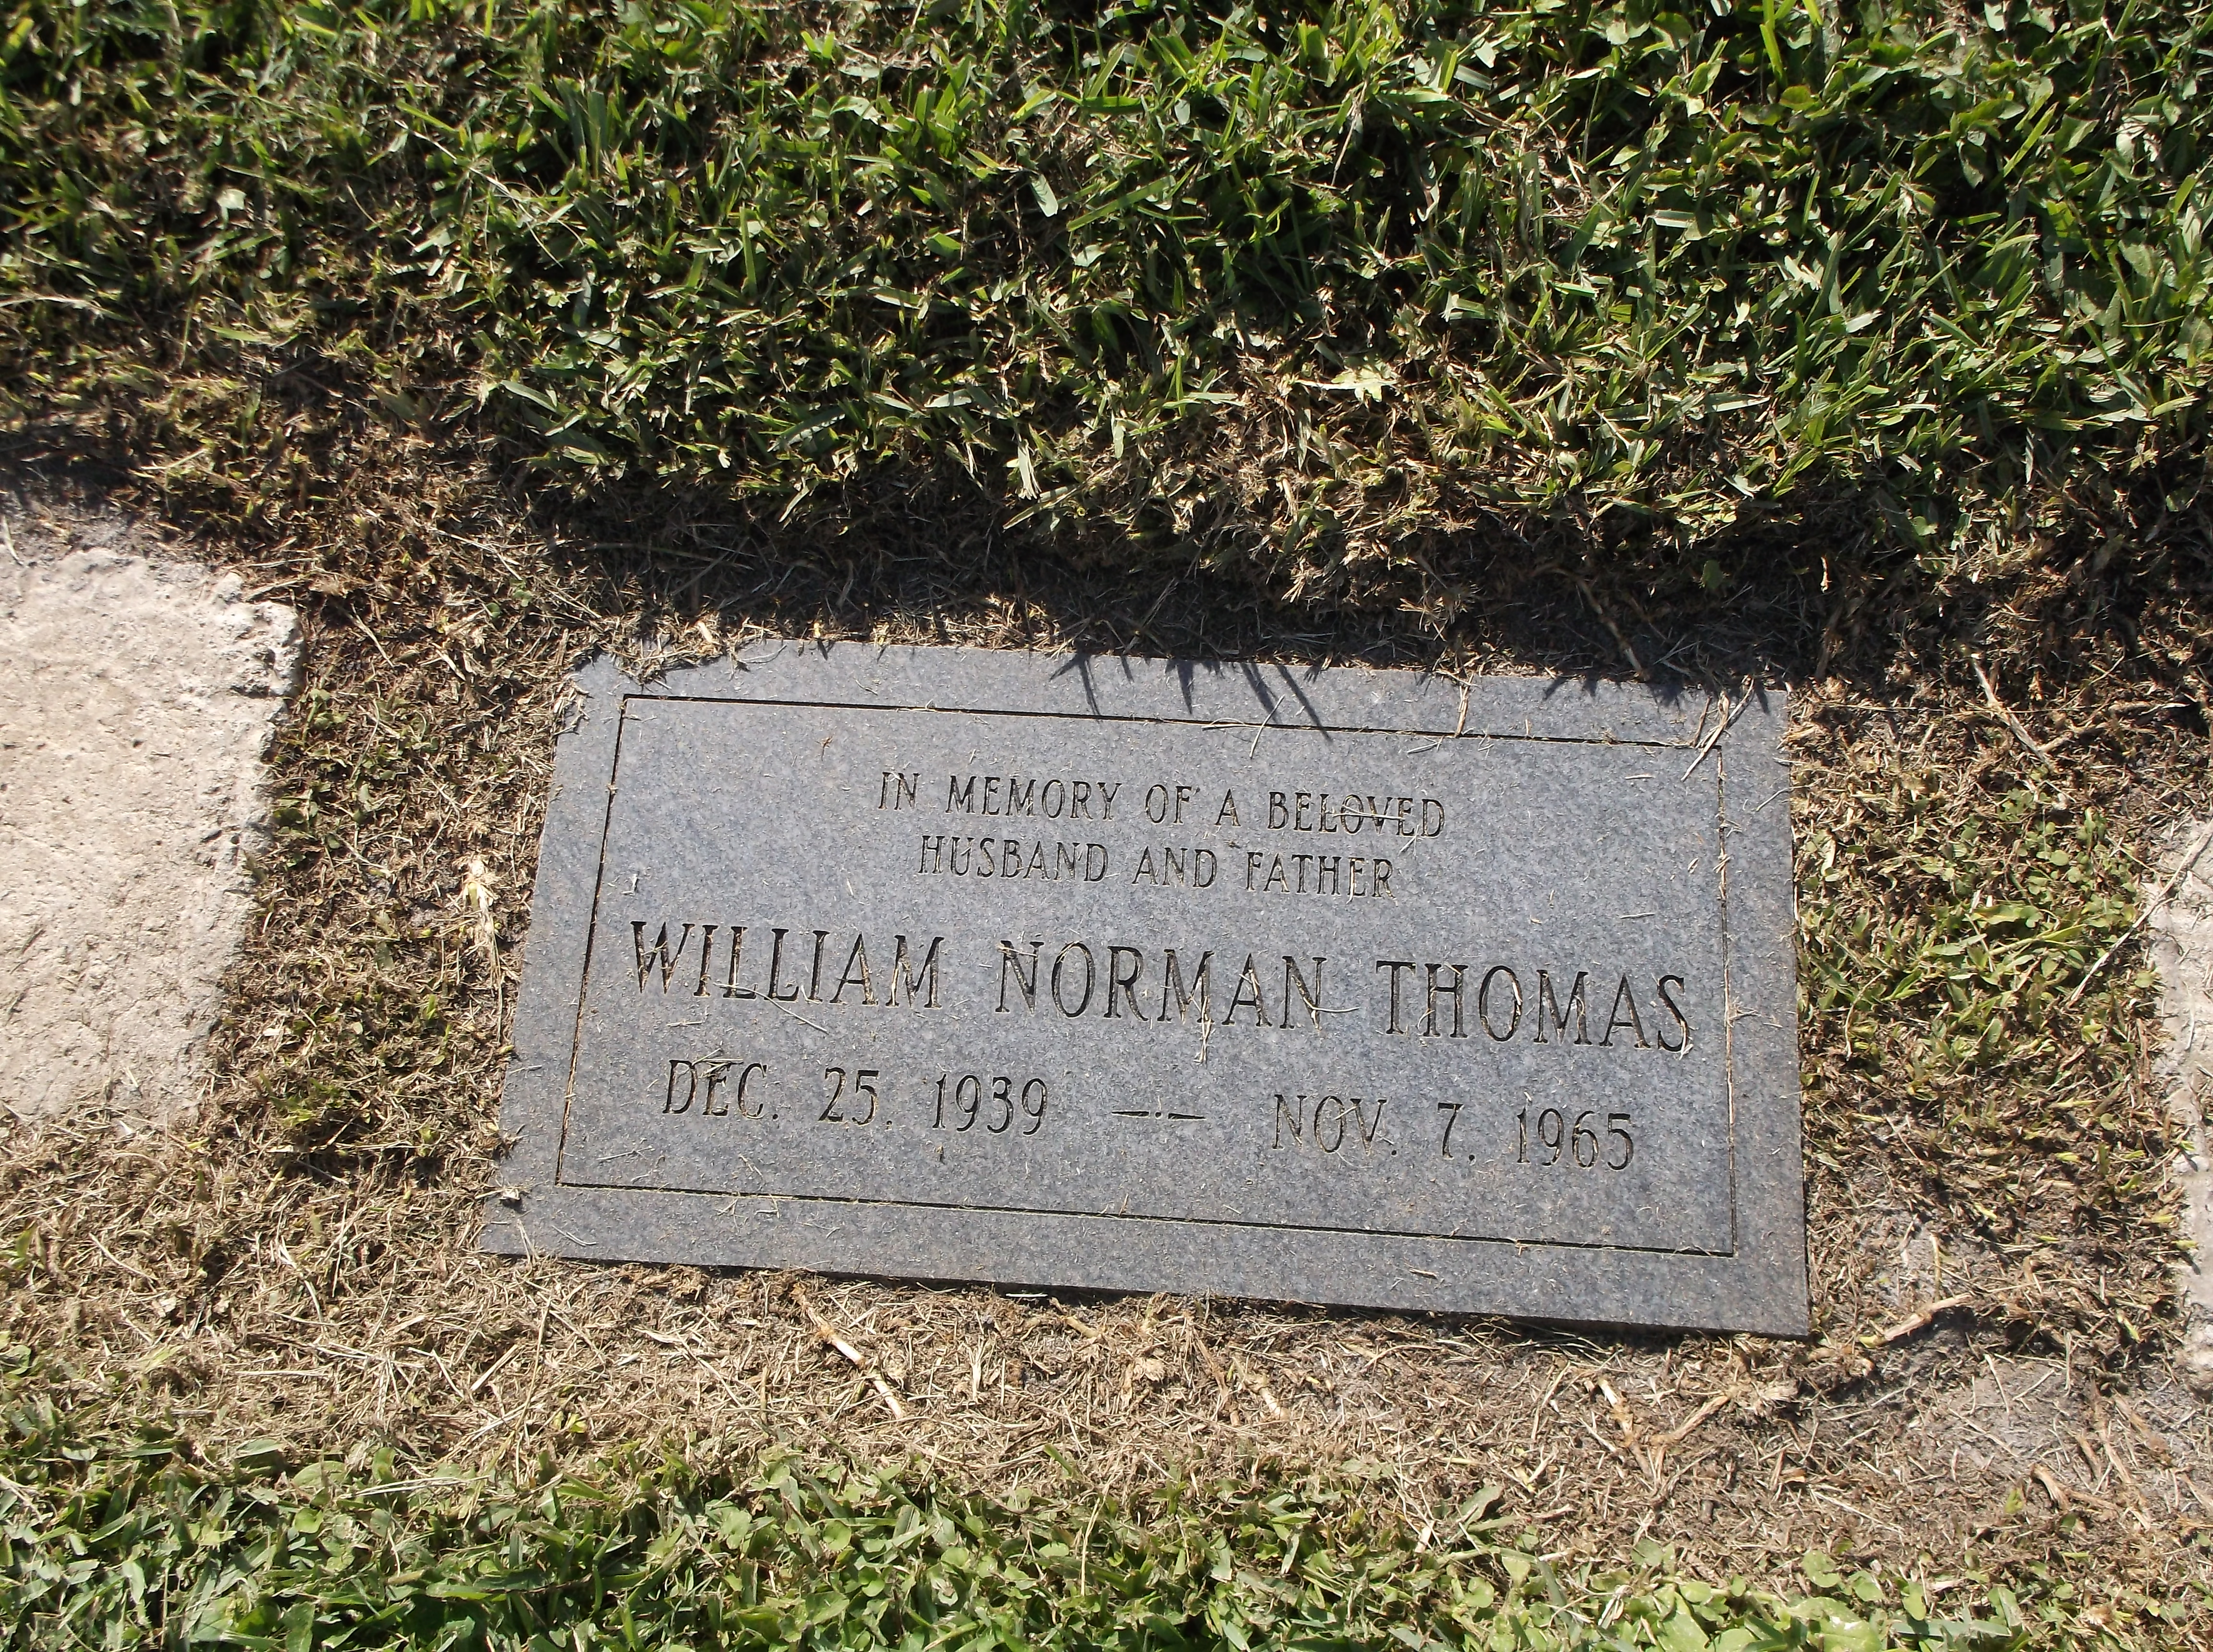 William Norman Thomas